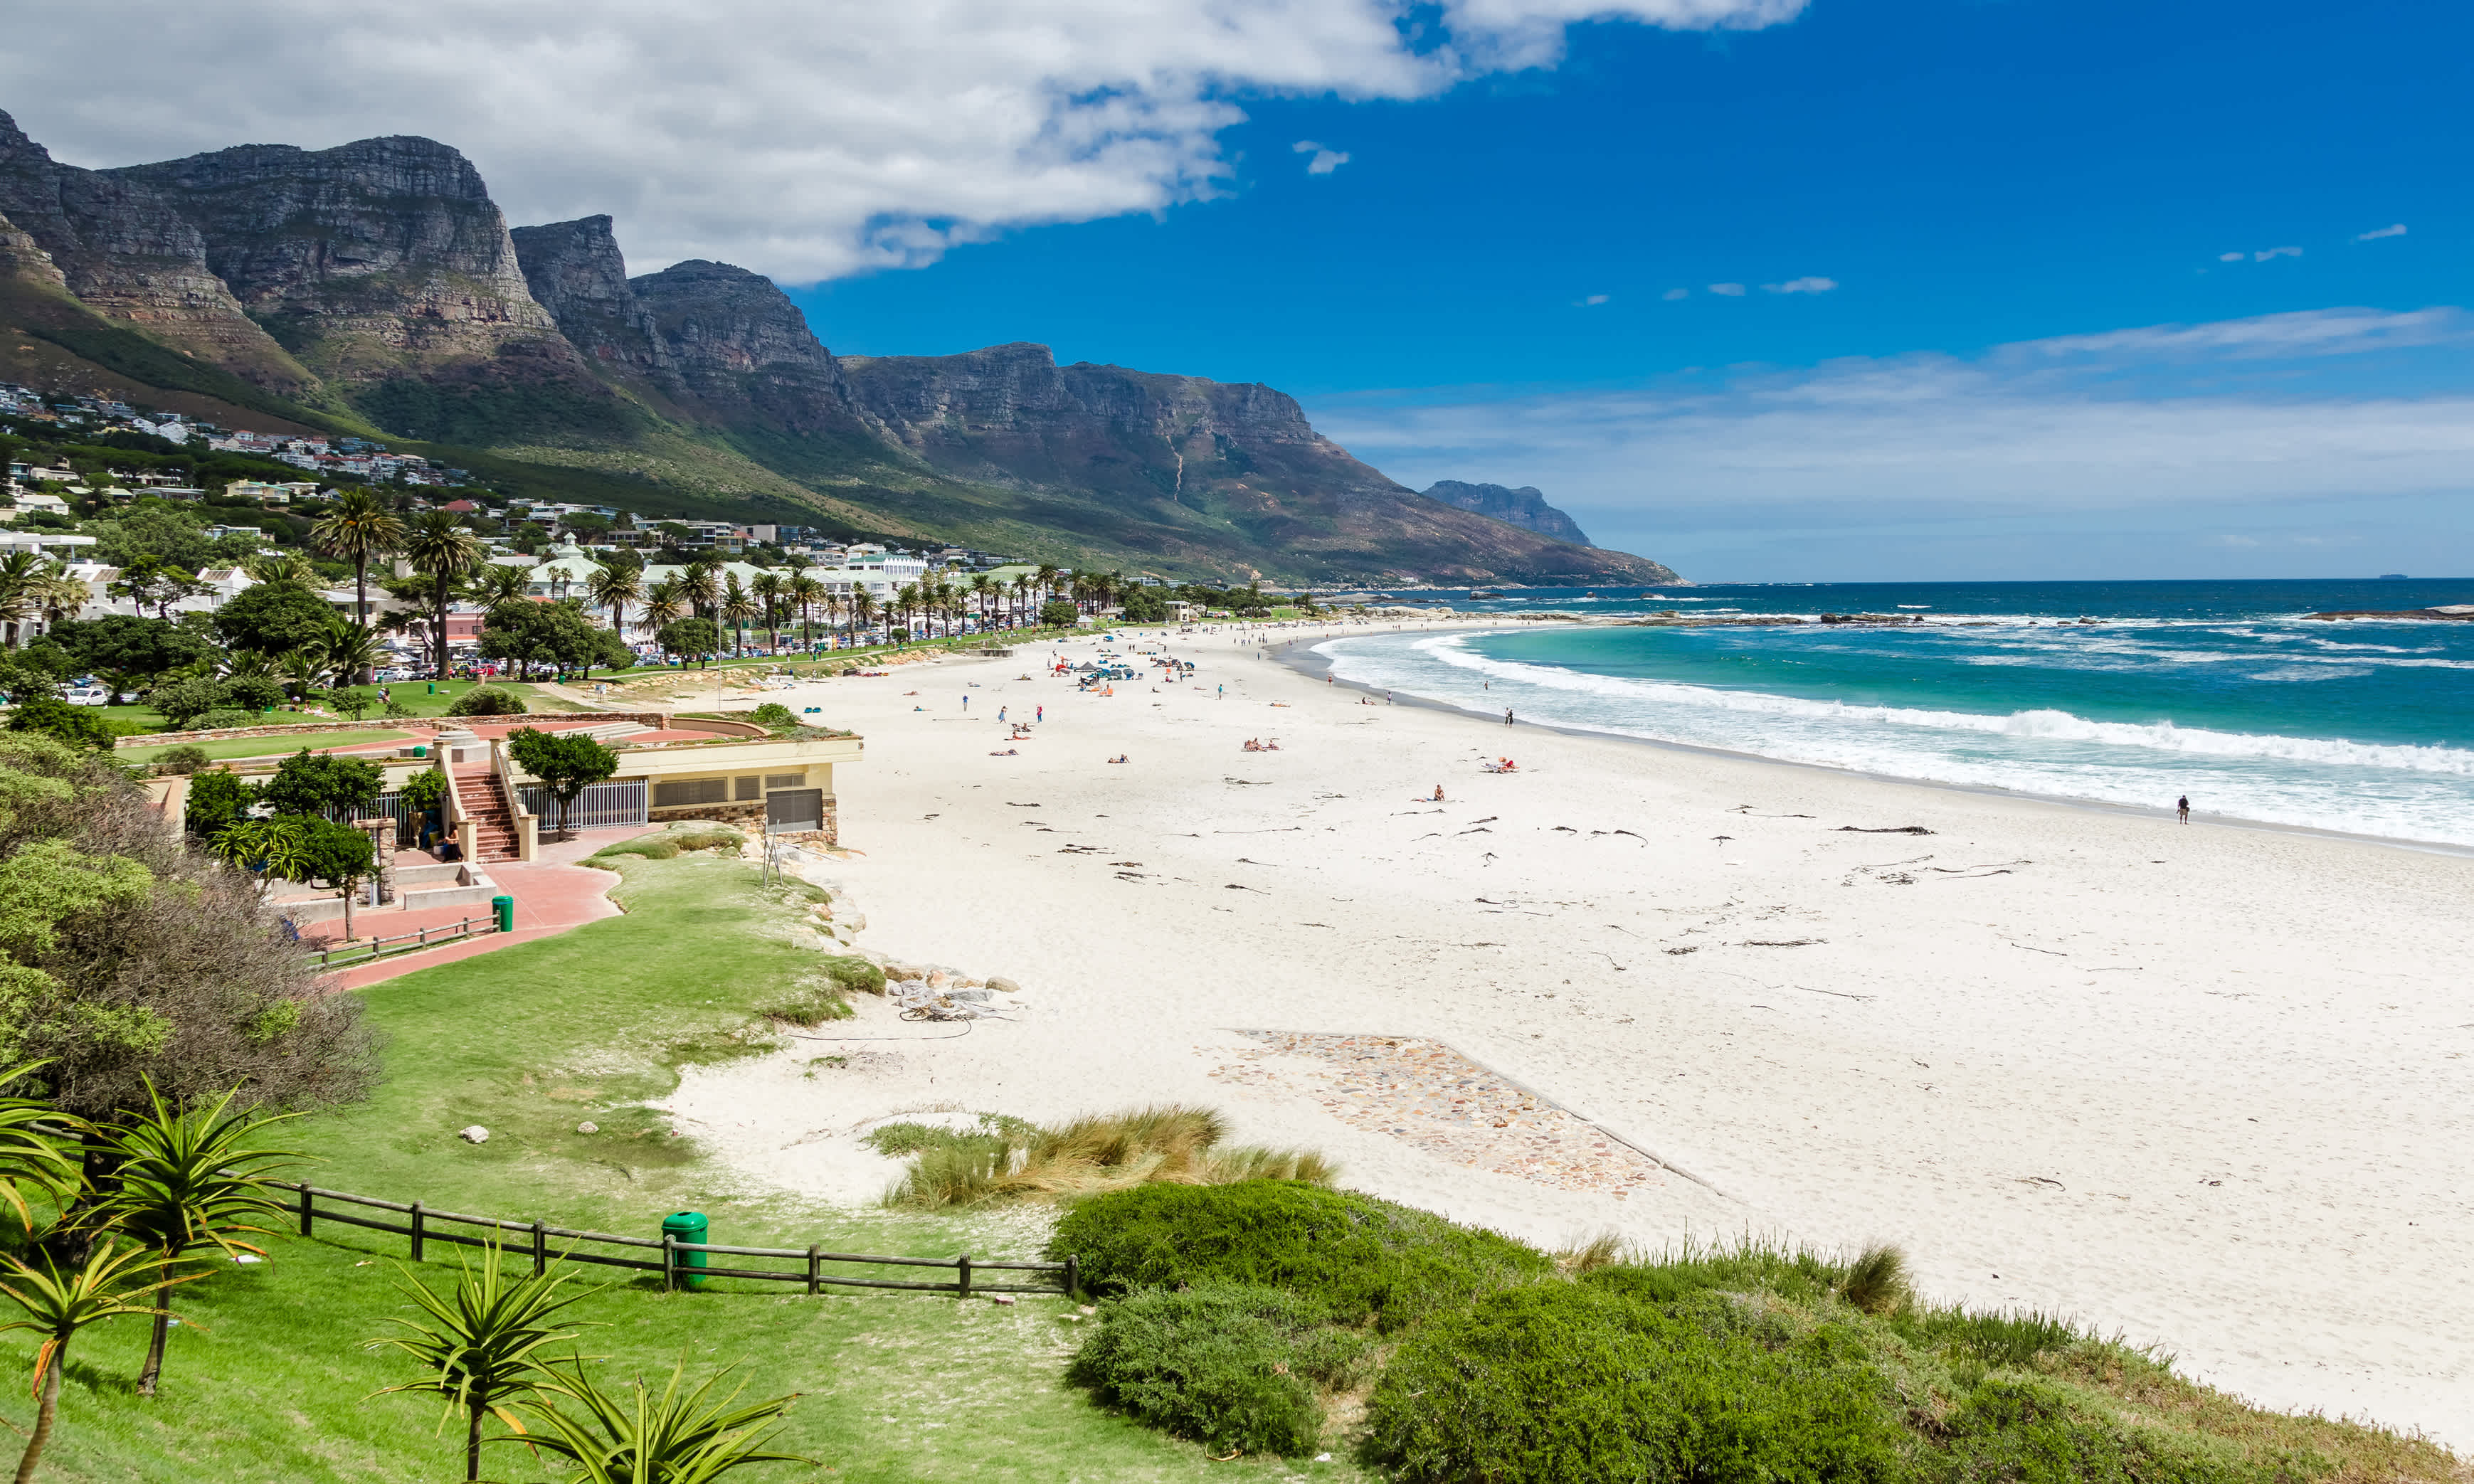 Afrique du Sud, vacances à la plage, plage de sable blac et mer turquoise.